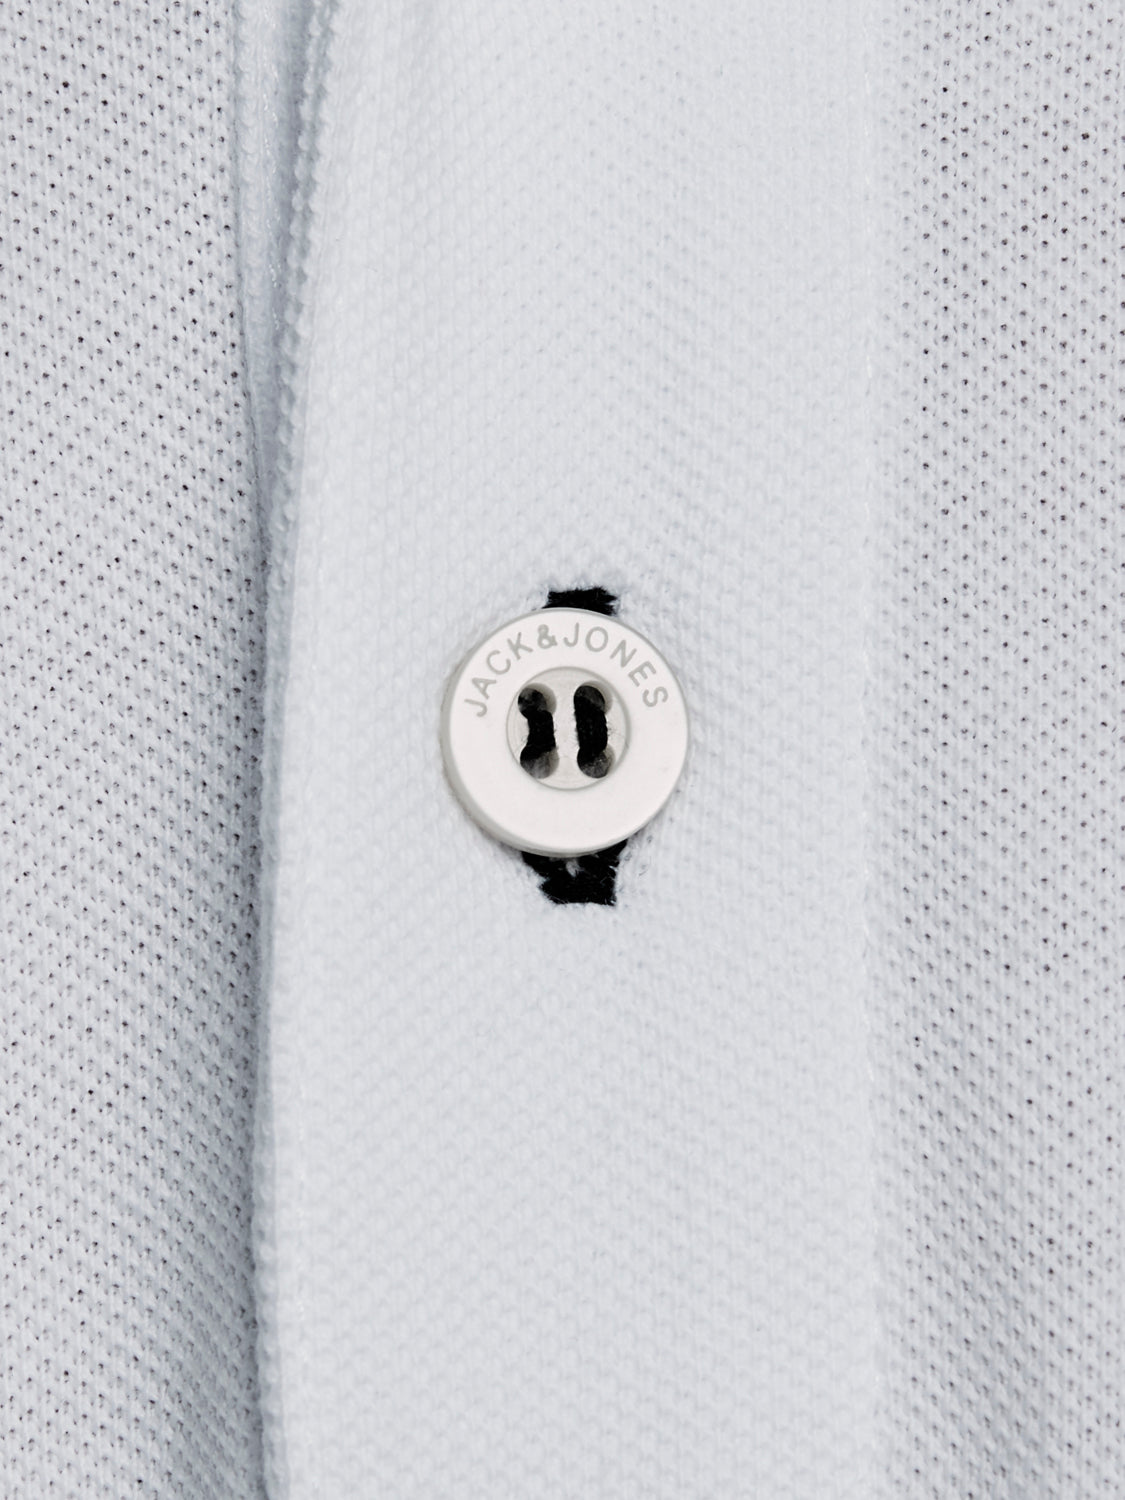 JJEPAULOS Polo shirt - white